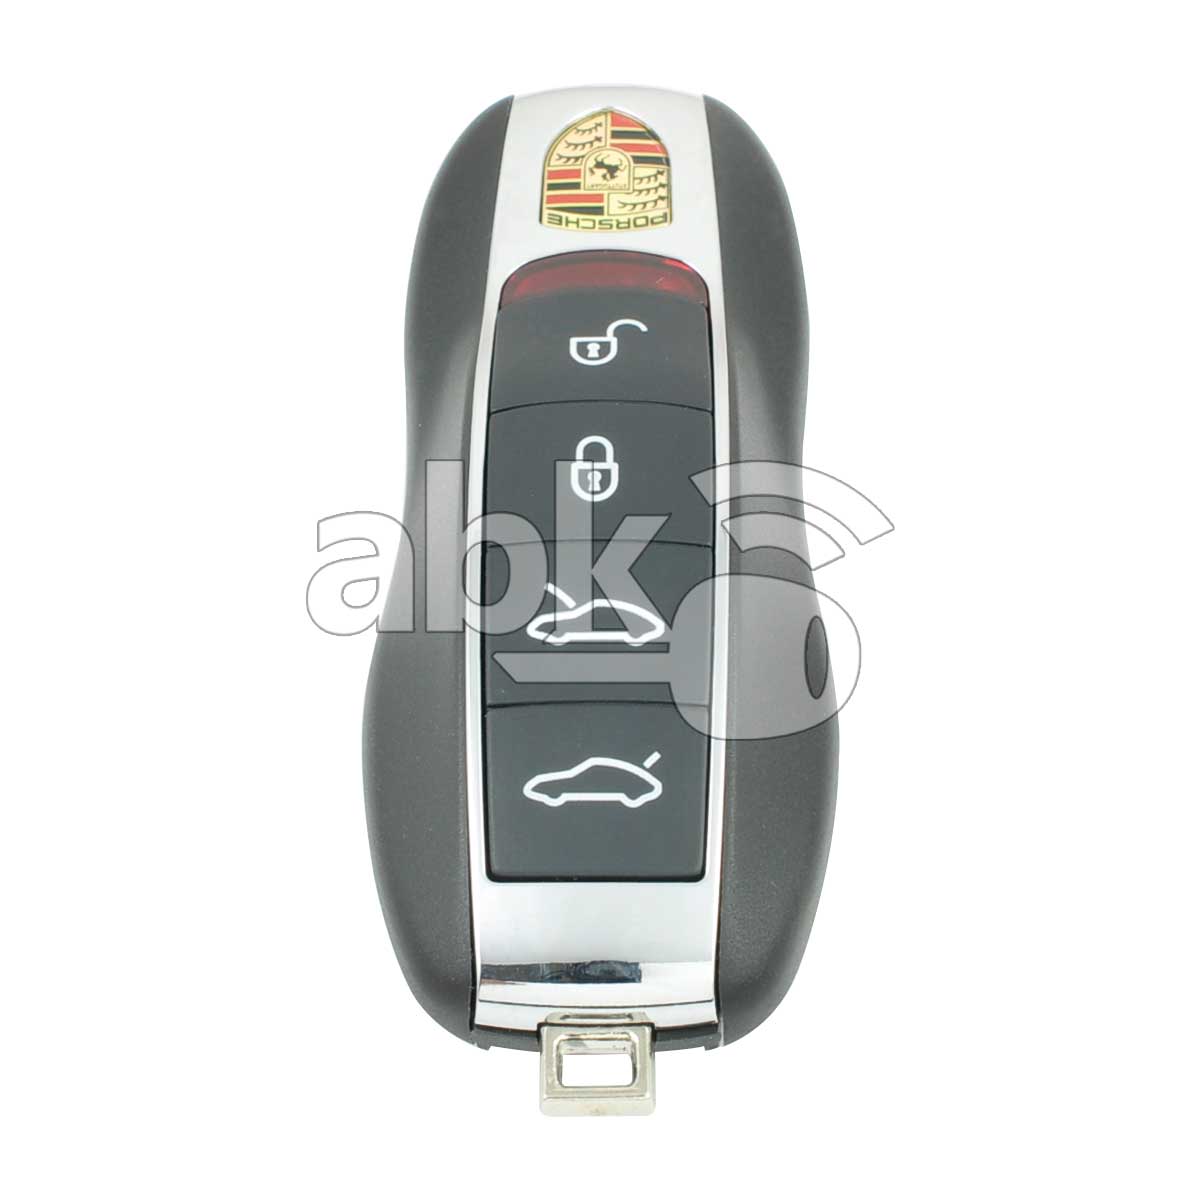 Porsche Panamera Macan 2013+ Smart Key 4Buttons 315MHz - ABK-3909 - ABKEYS.COM